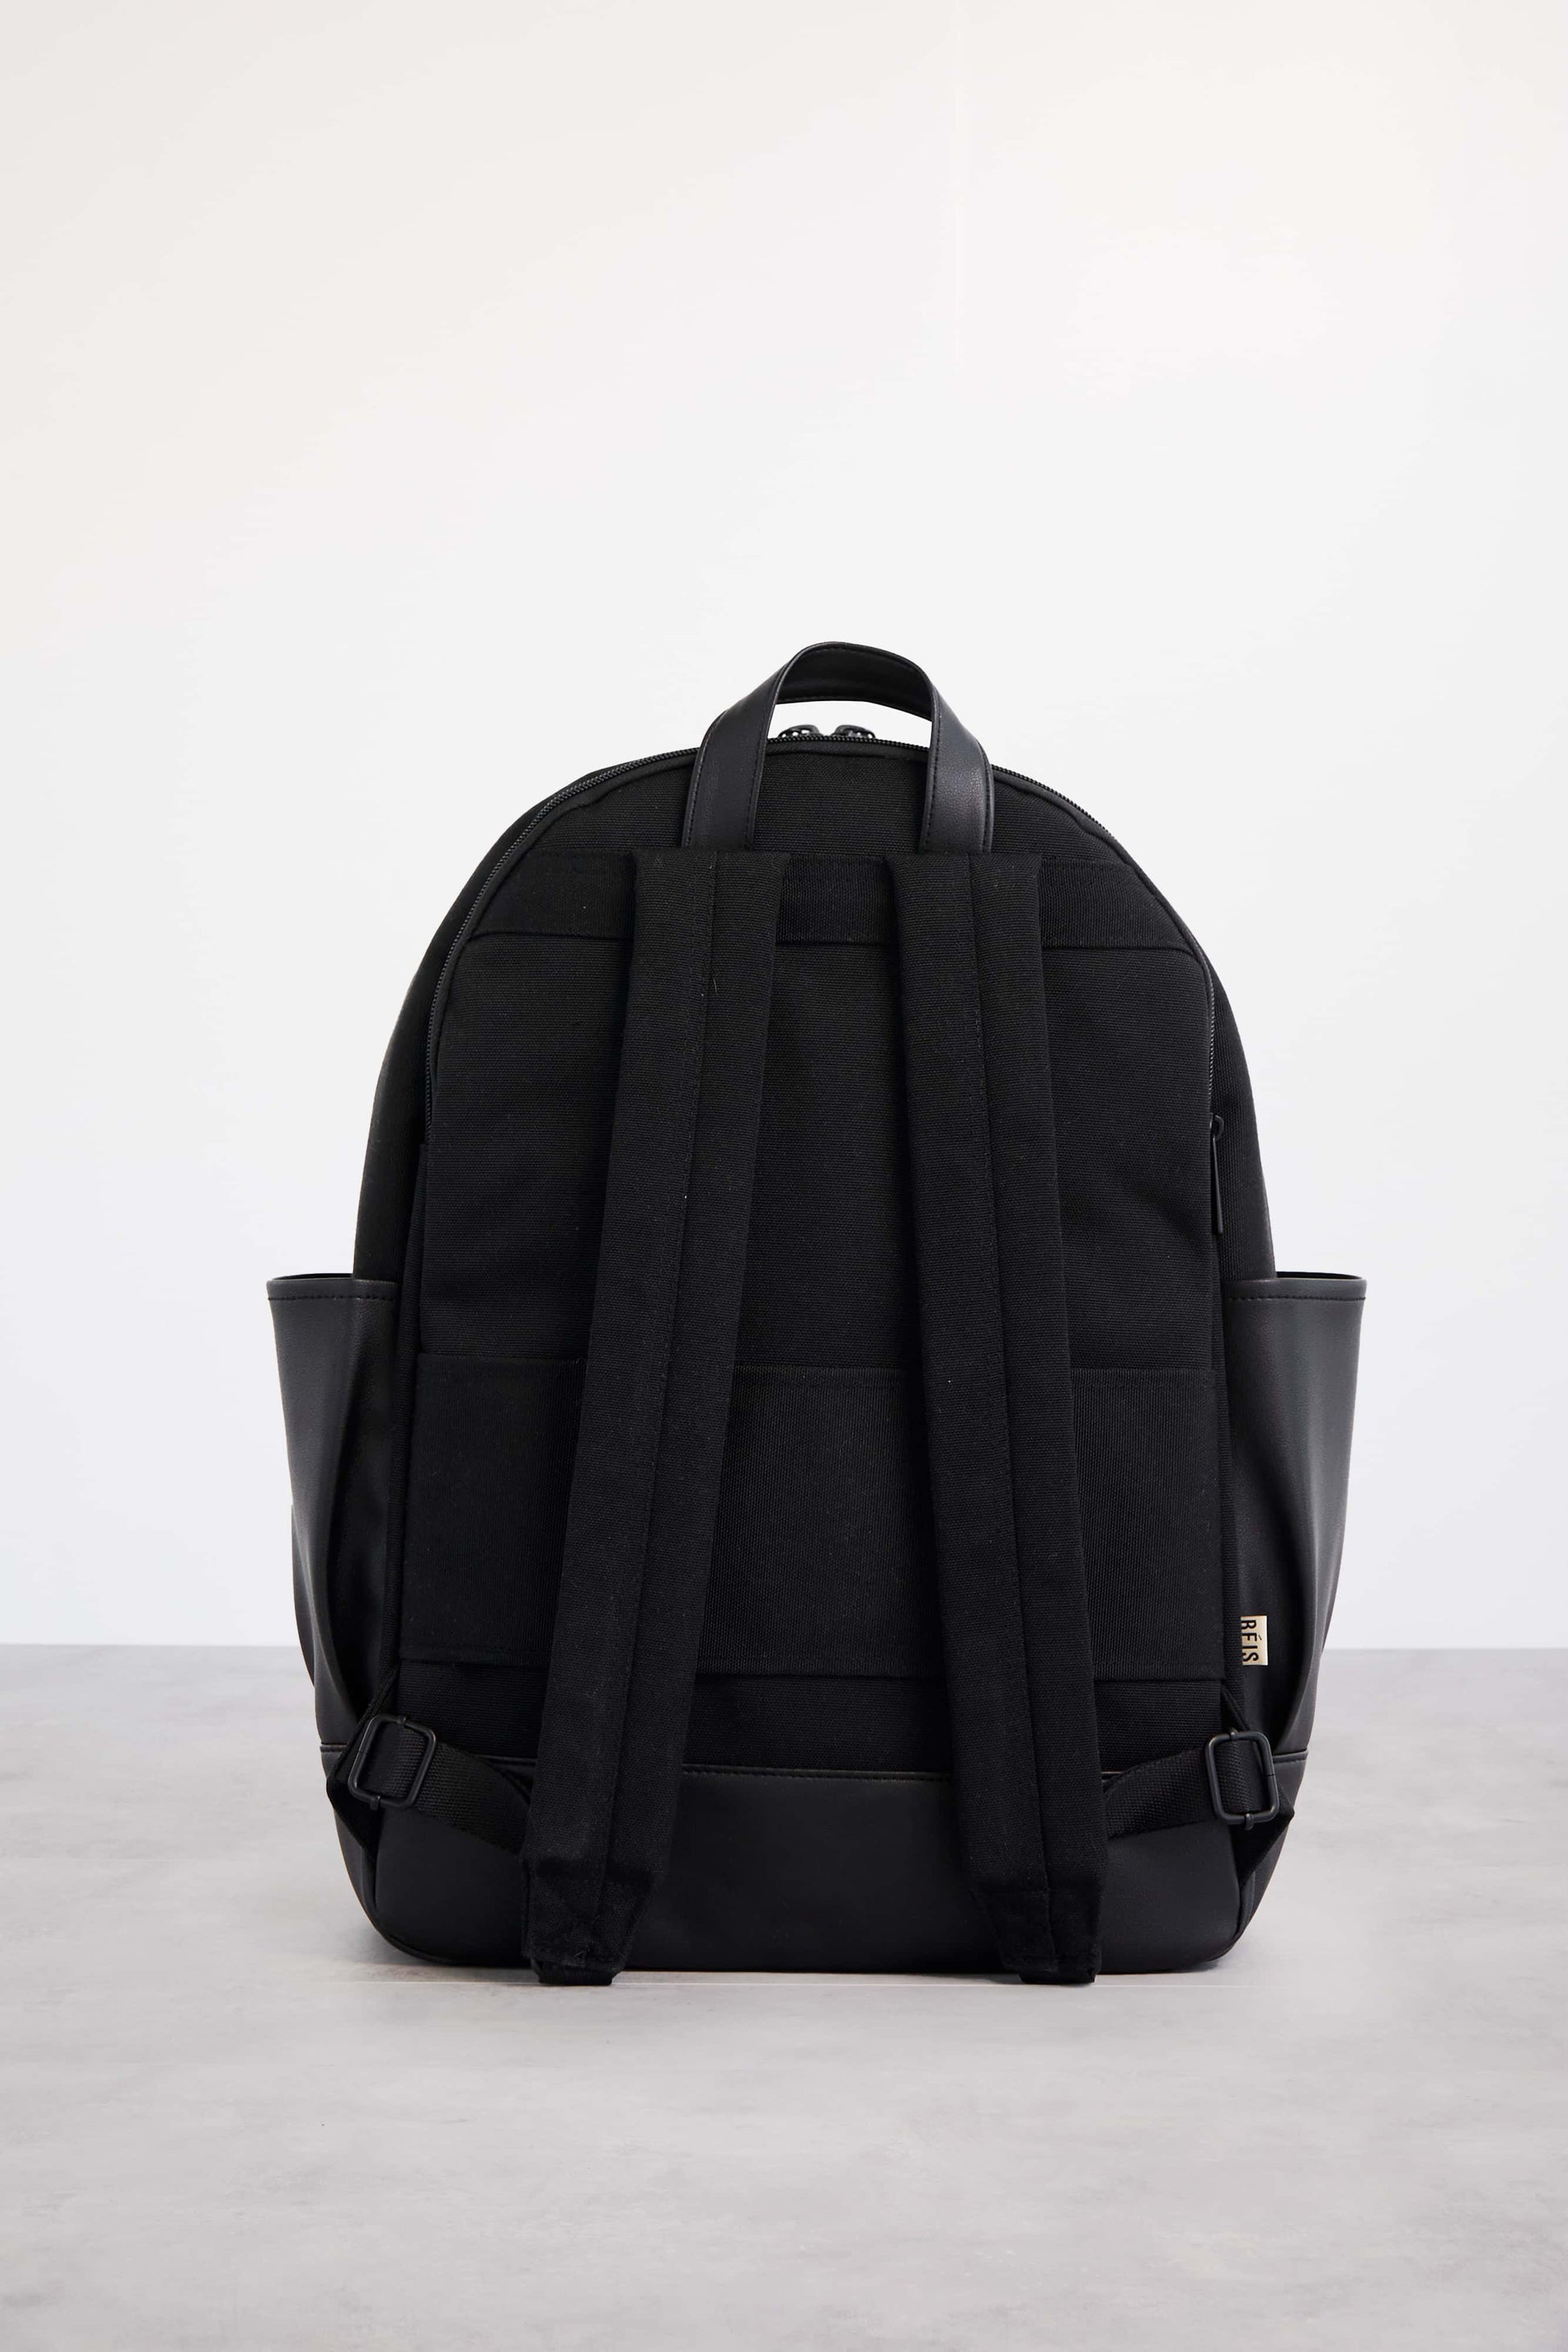 Backpack Black Back